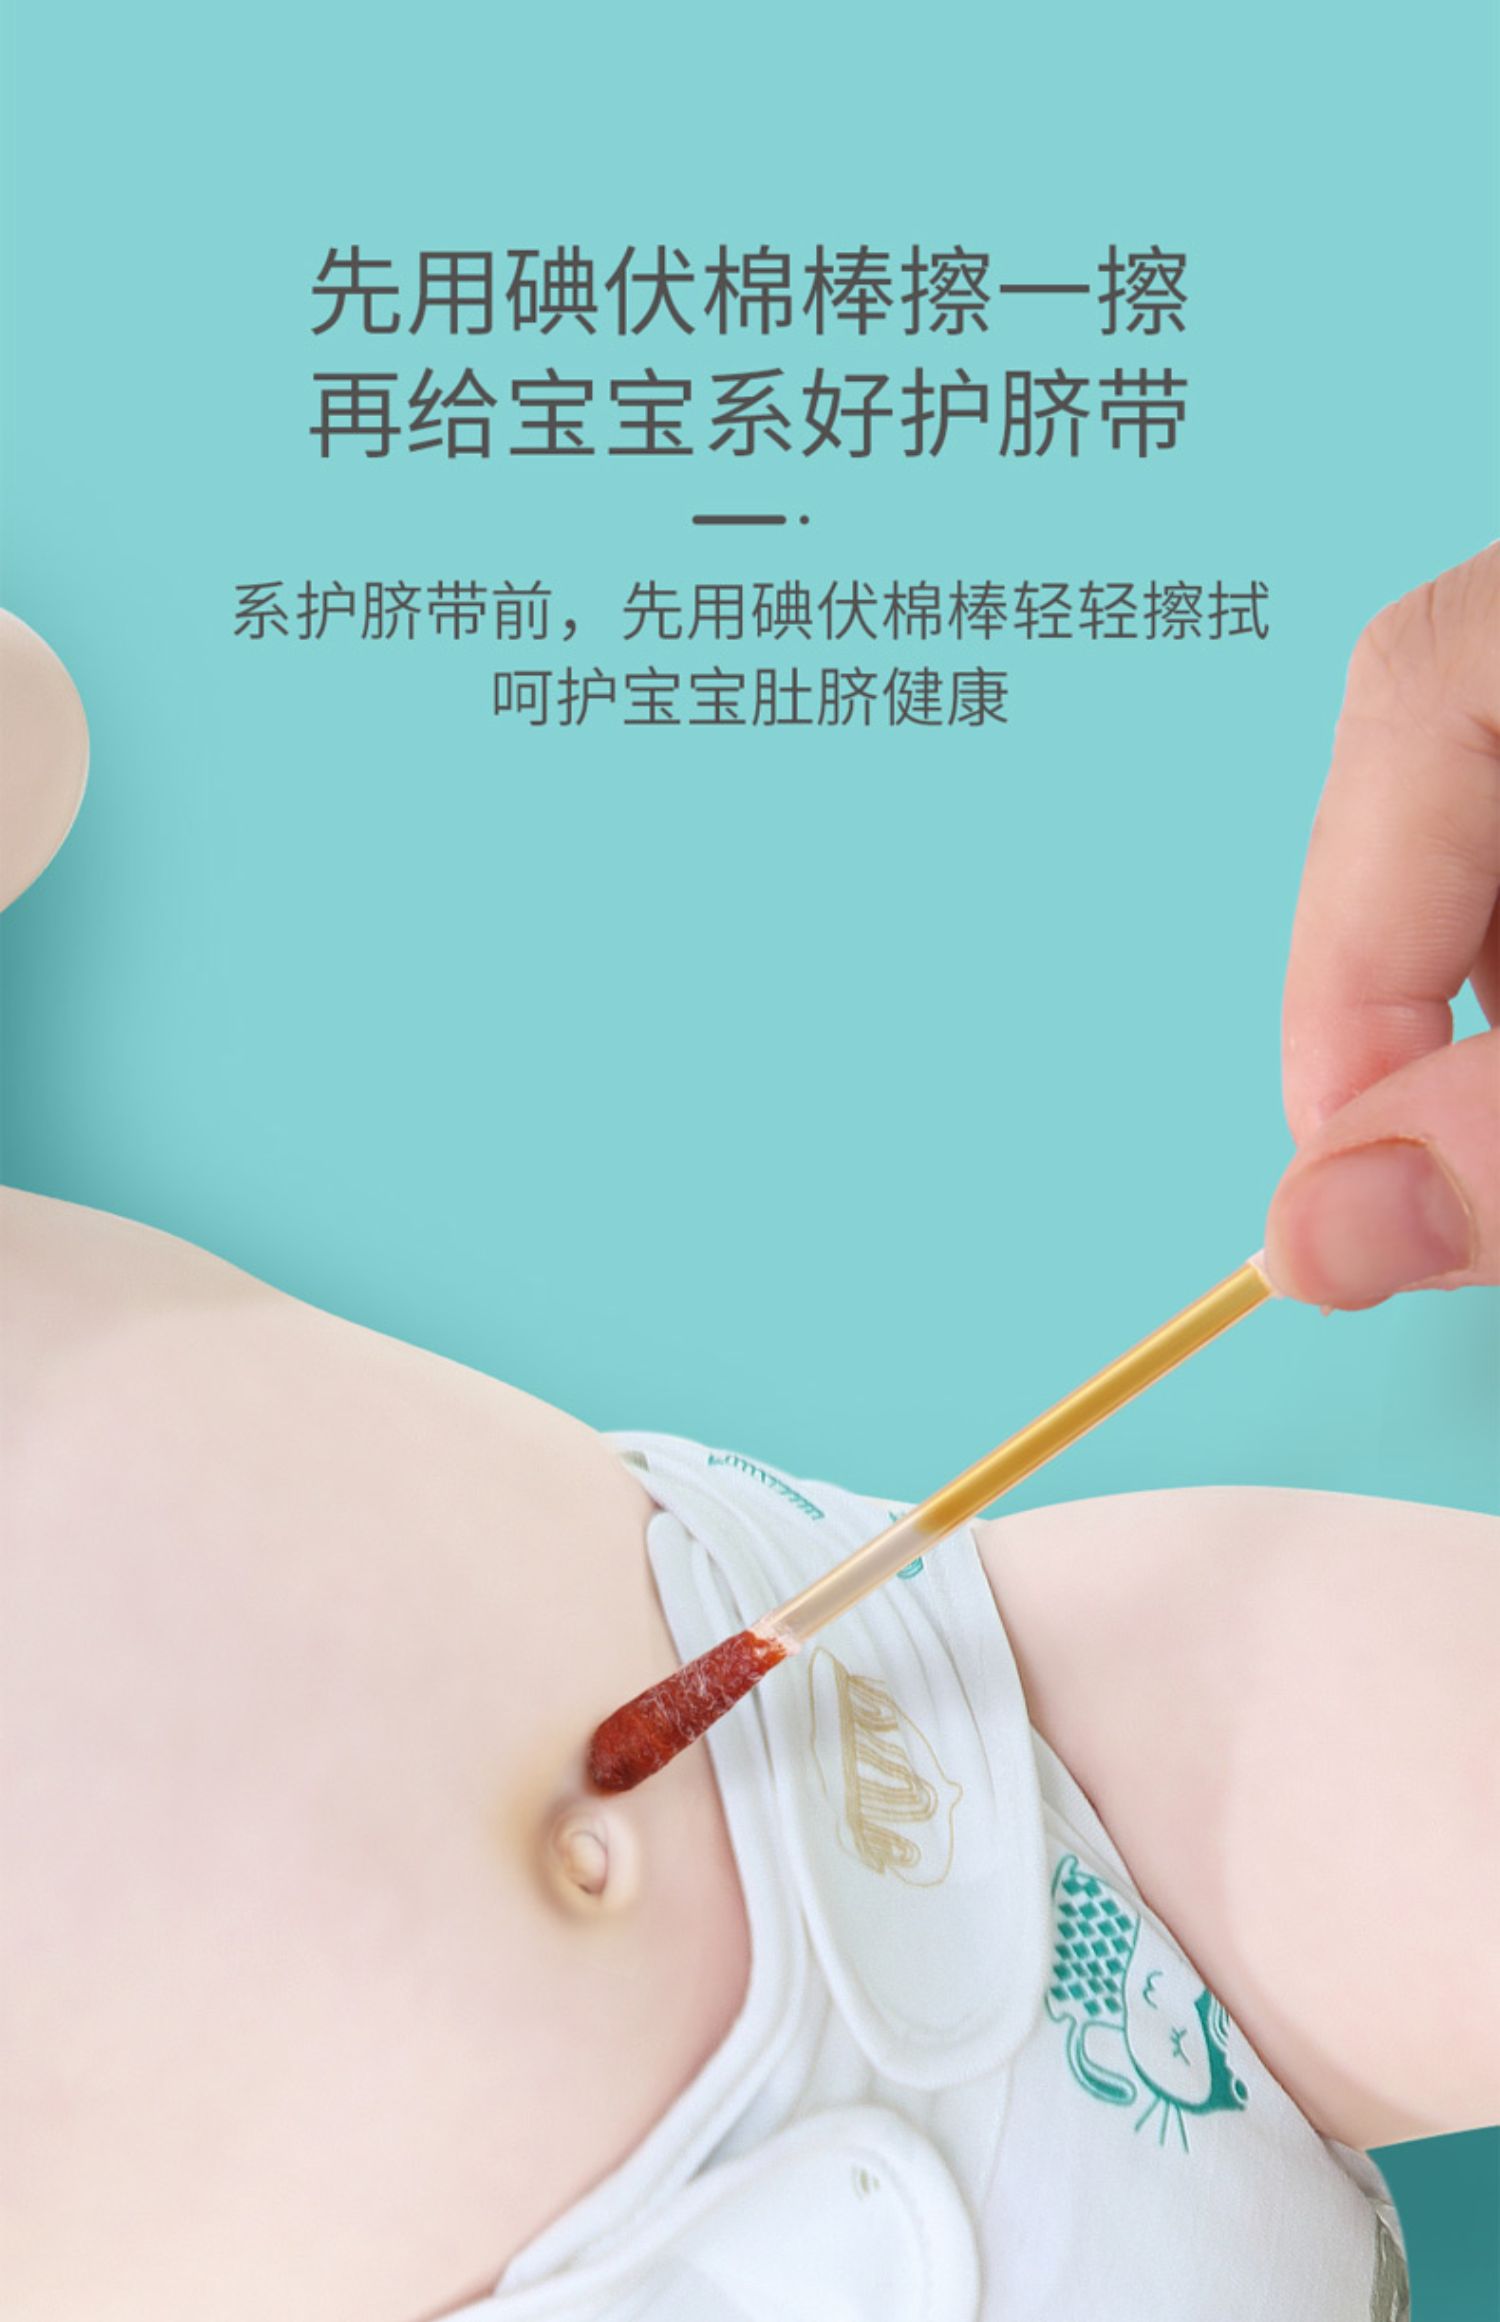 婴儿护脐带用法图片图片